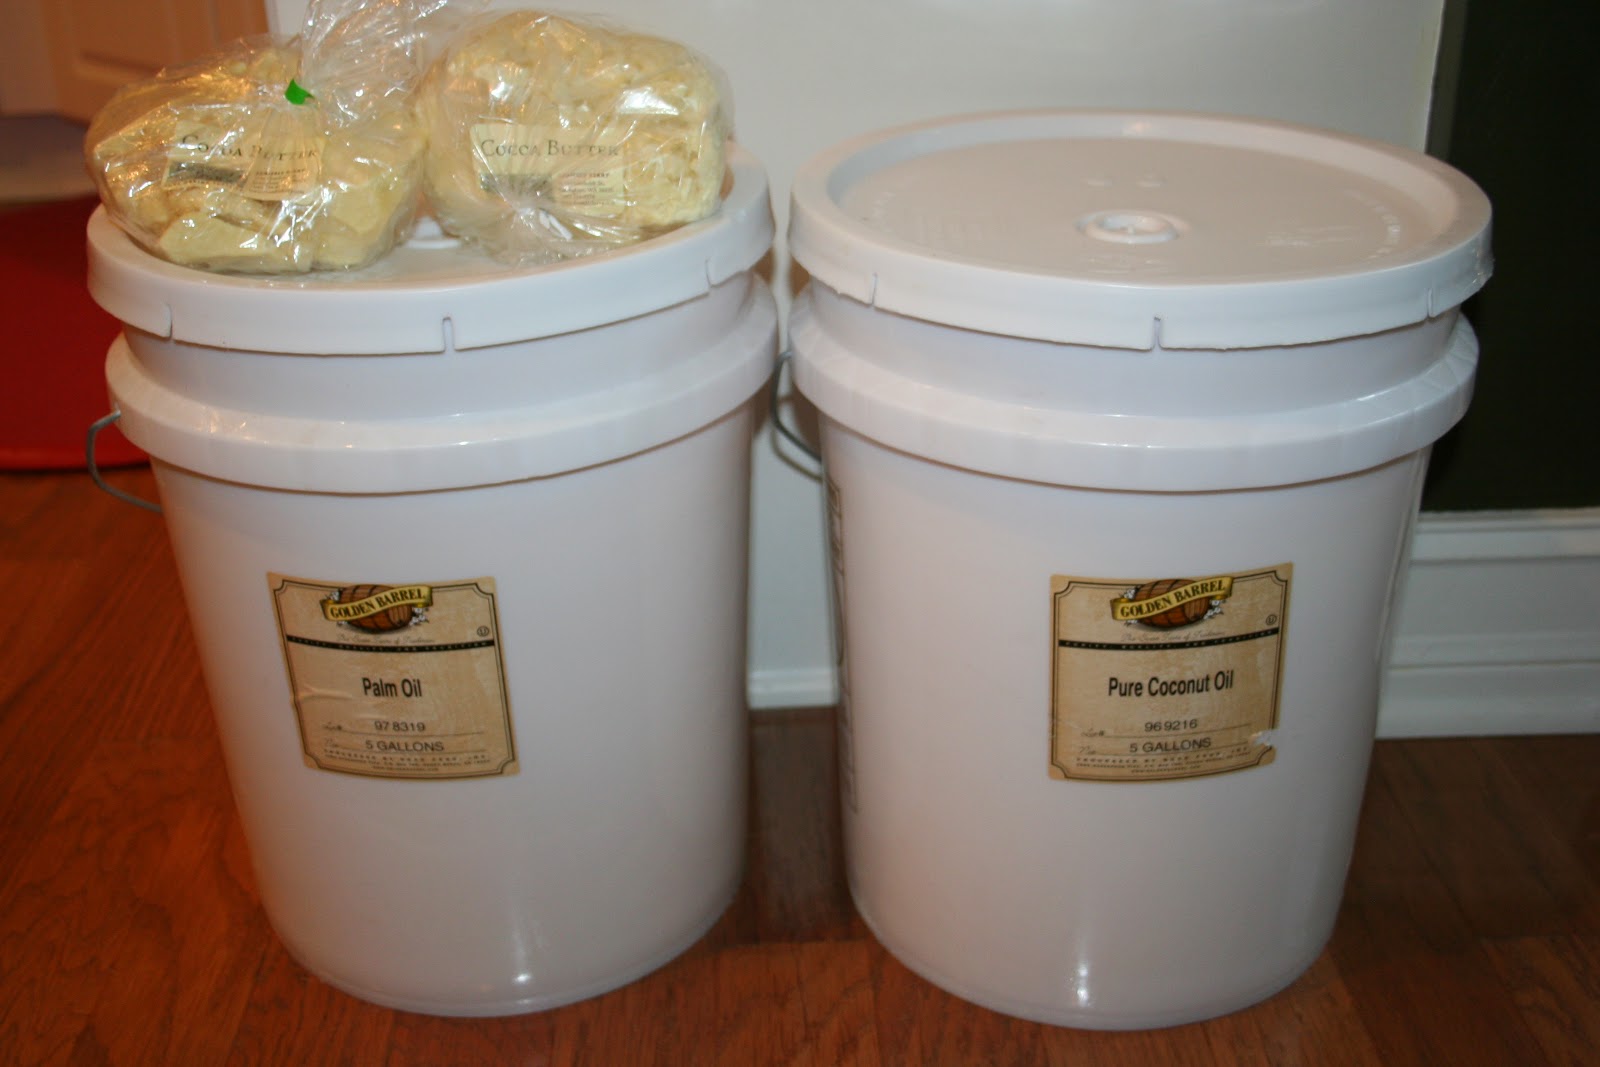 5-Gallon Food Grade Buckets - Simply Preparing